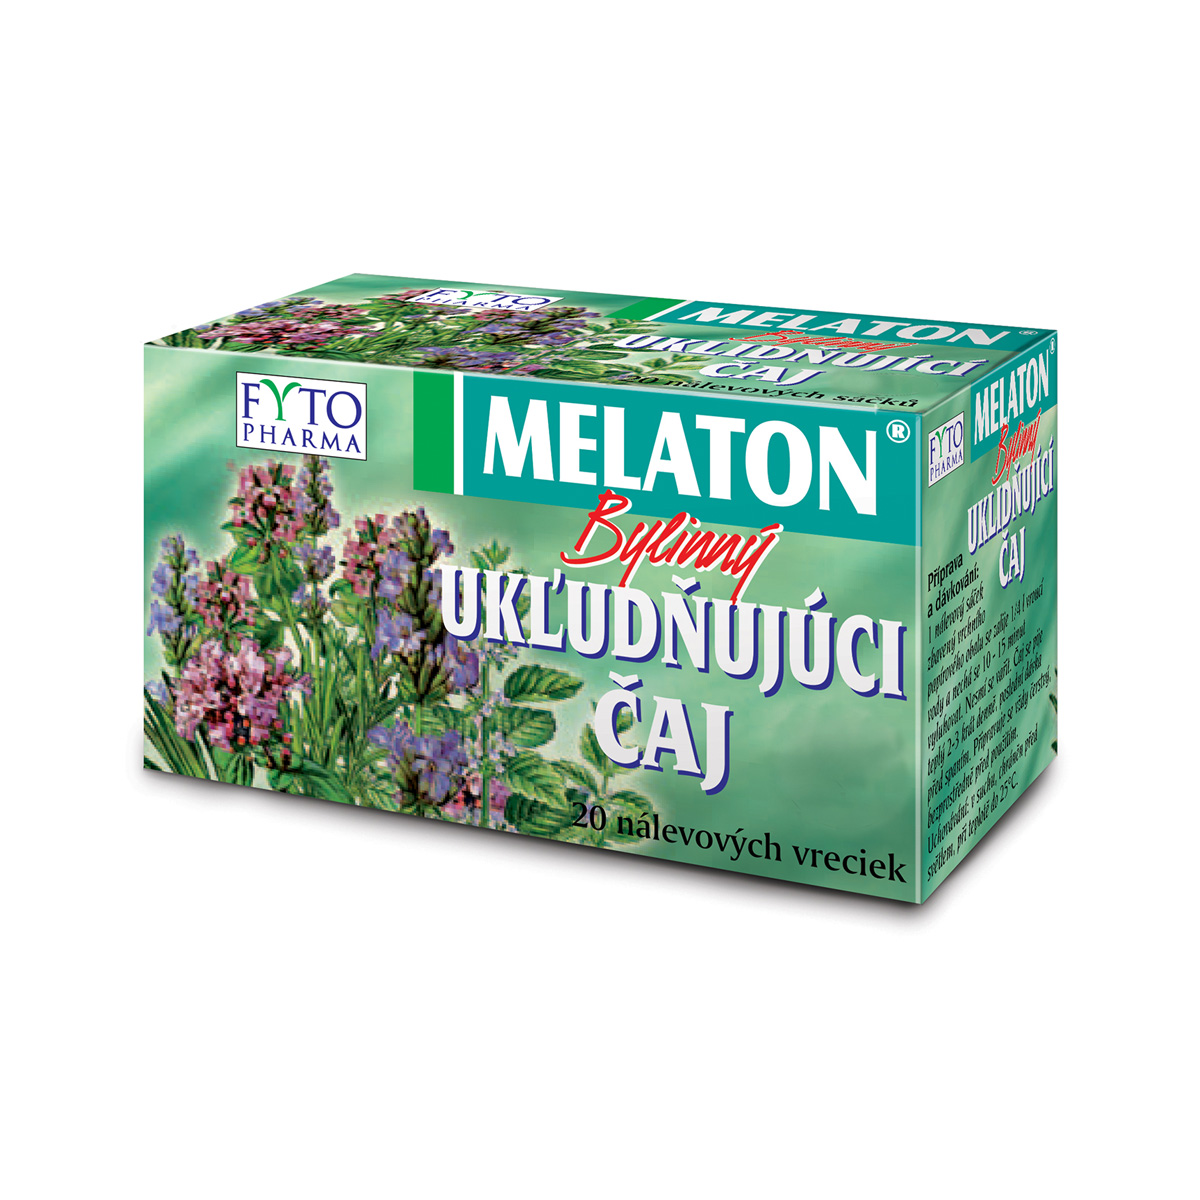 Fytopharma MELATON® bylinný uklidňující čaj 20 x 1,5 g